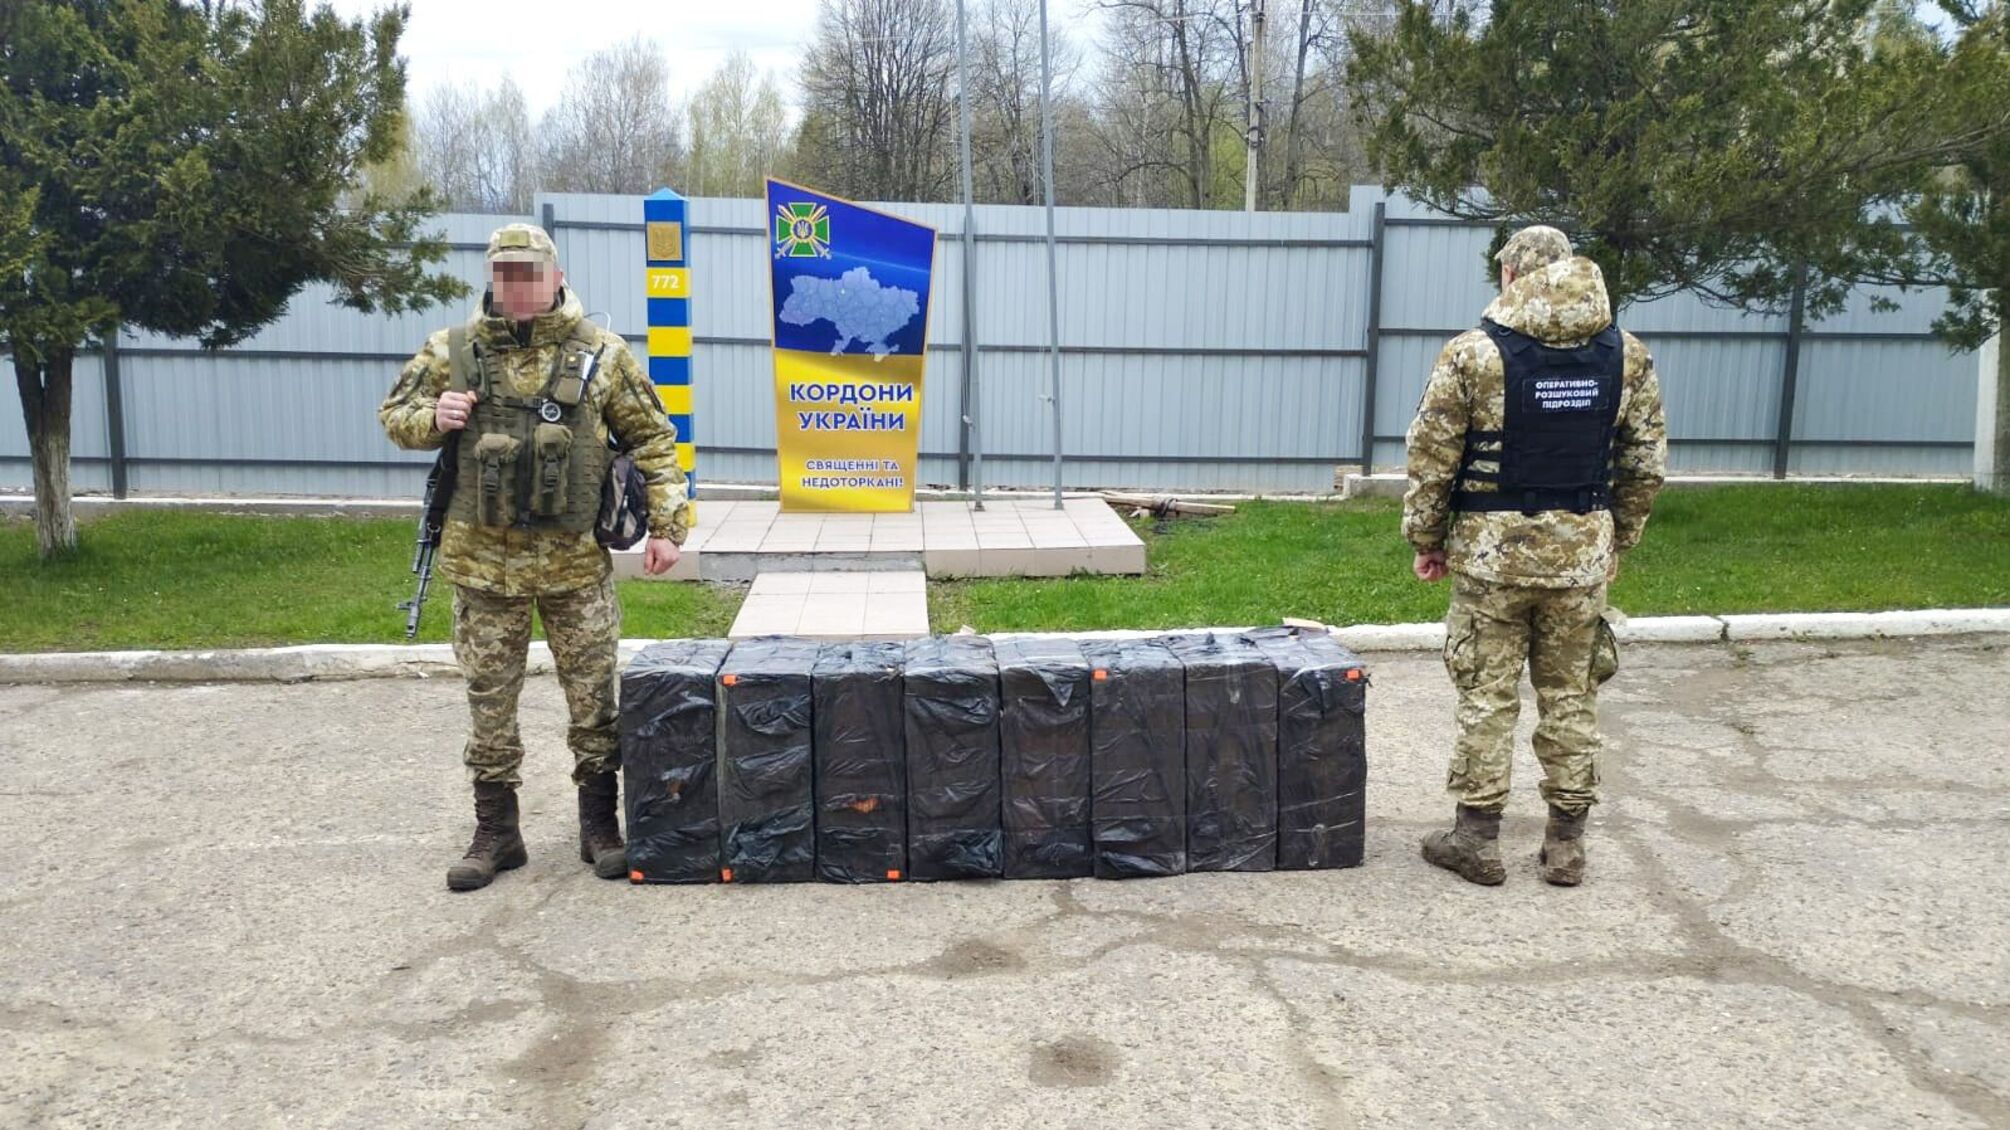 С контрабандой за спиной: на Буковине пограничники разоблачили злоумышленников с партией табака